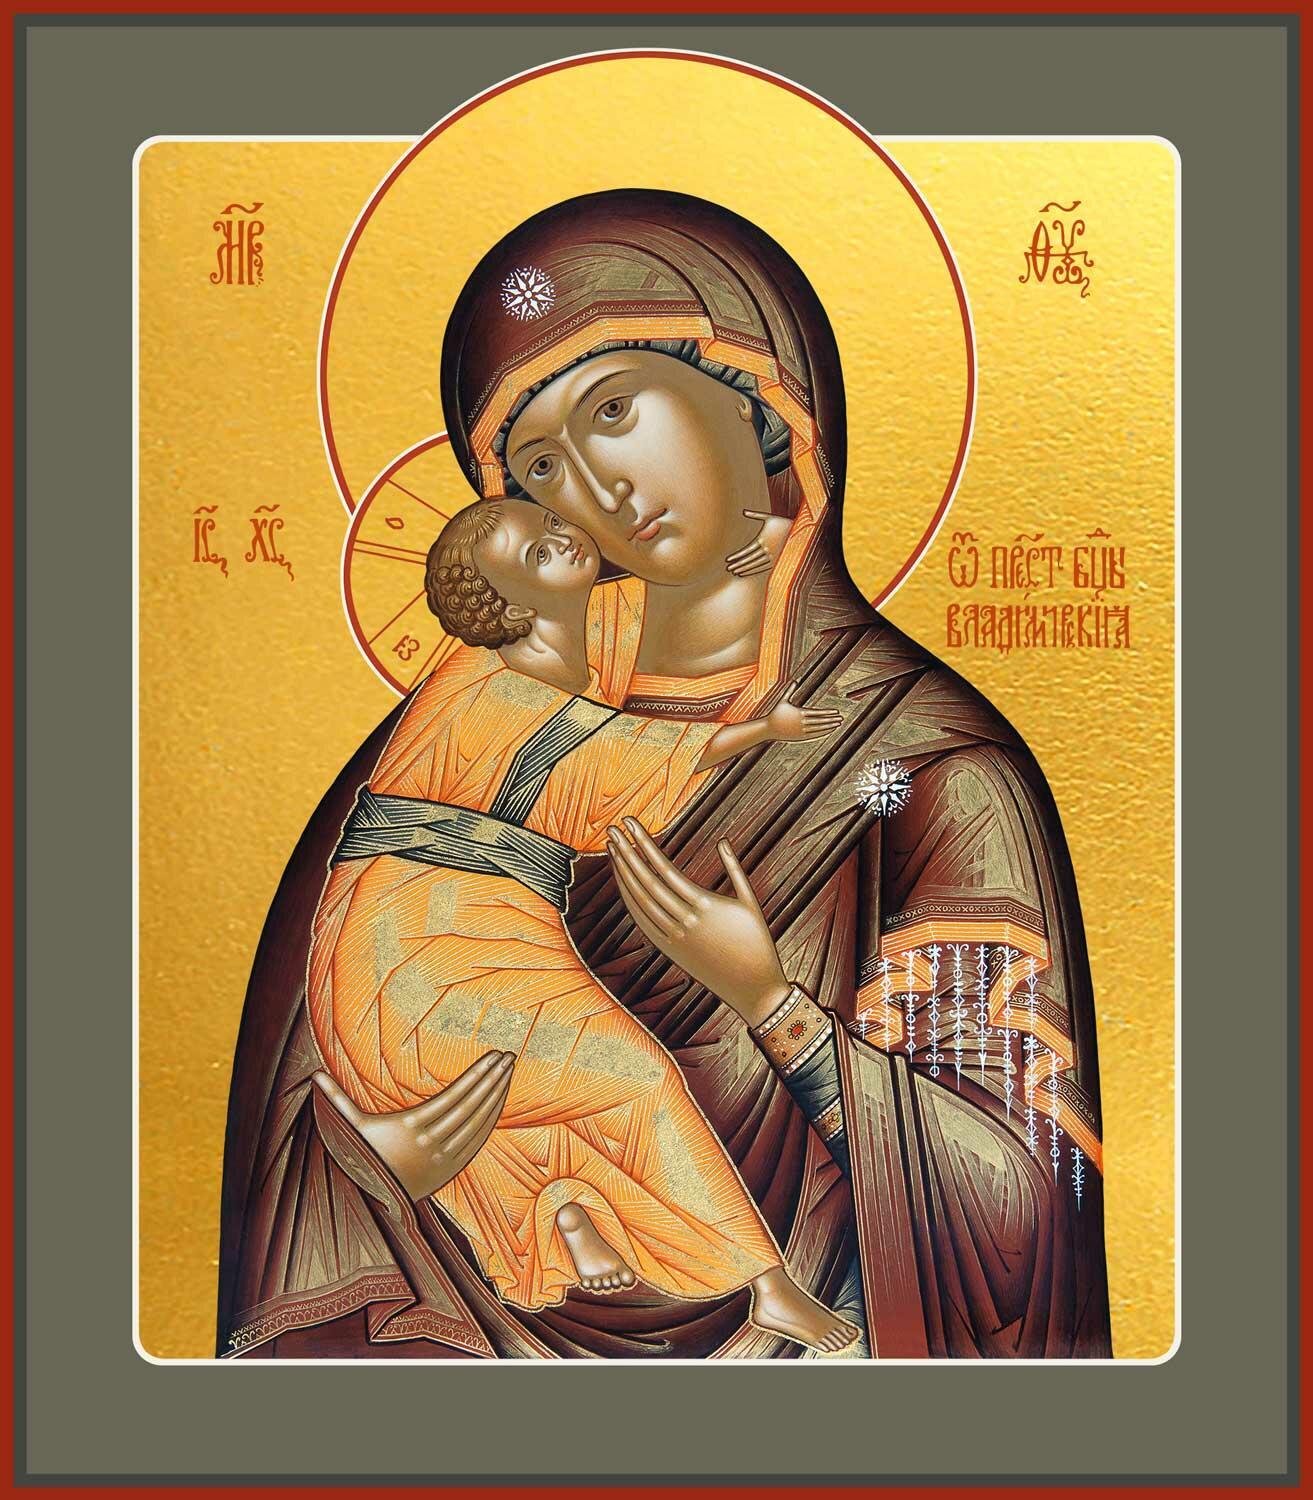 8 СЕНТЯБРЯ - Празднование в честь сретения Владимирской иконы Пресвятой Богородицы